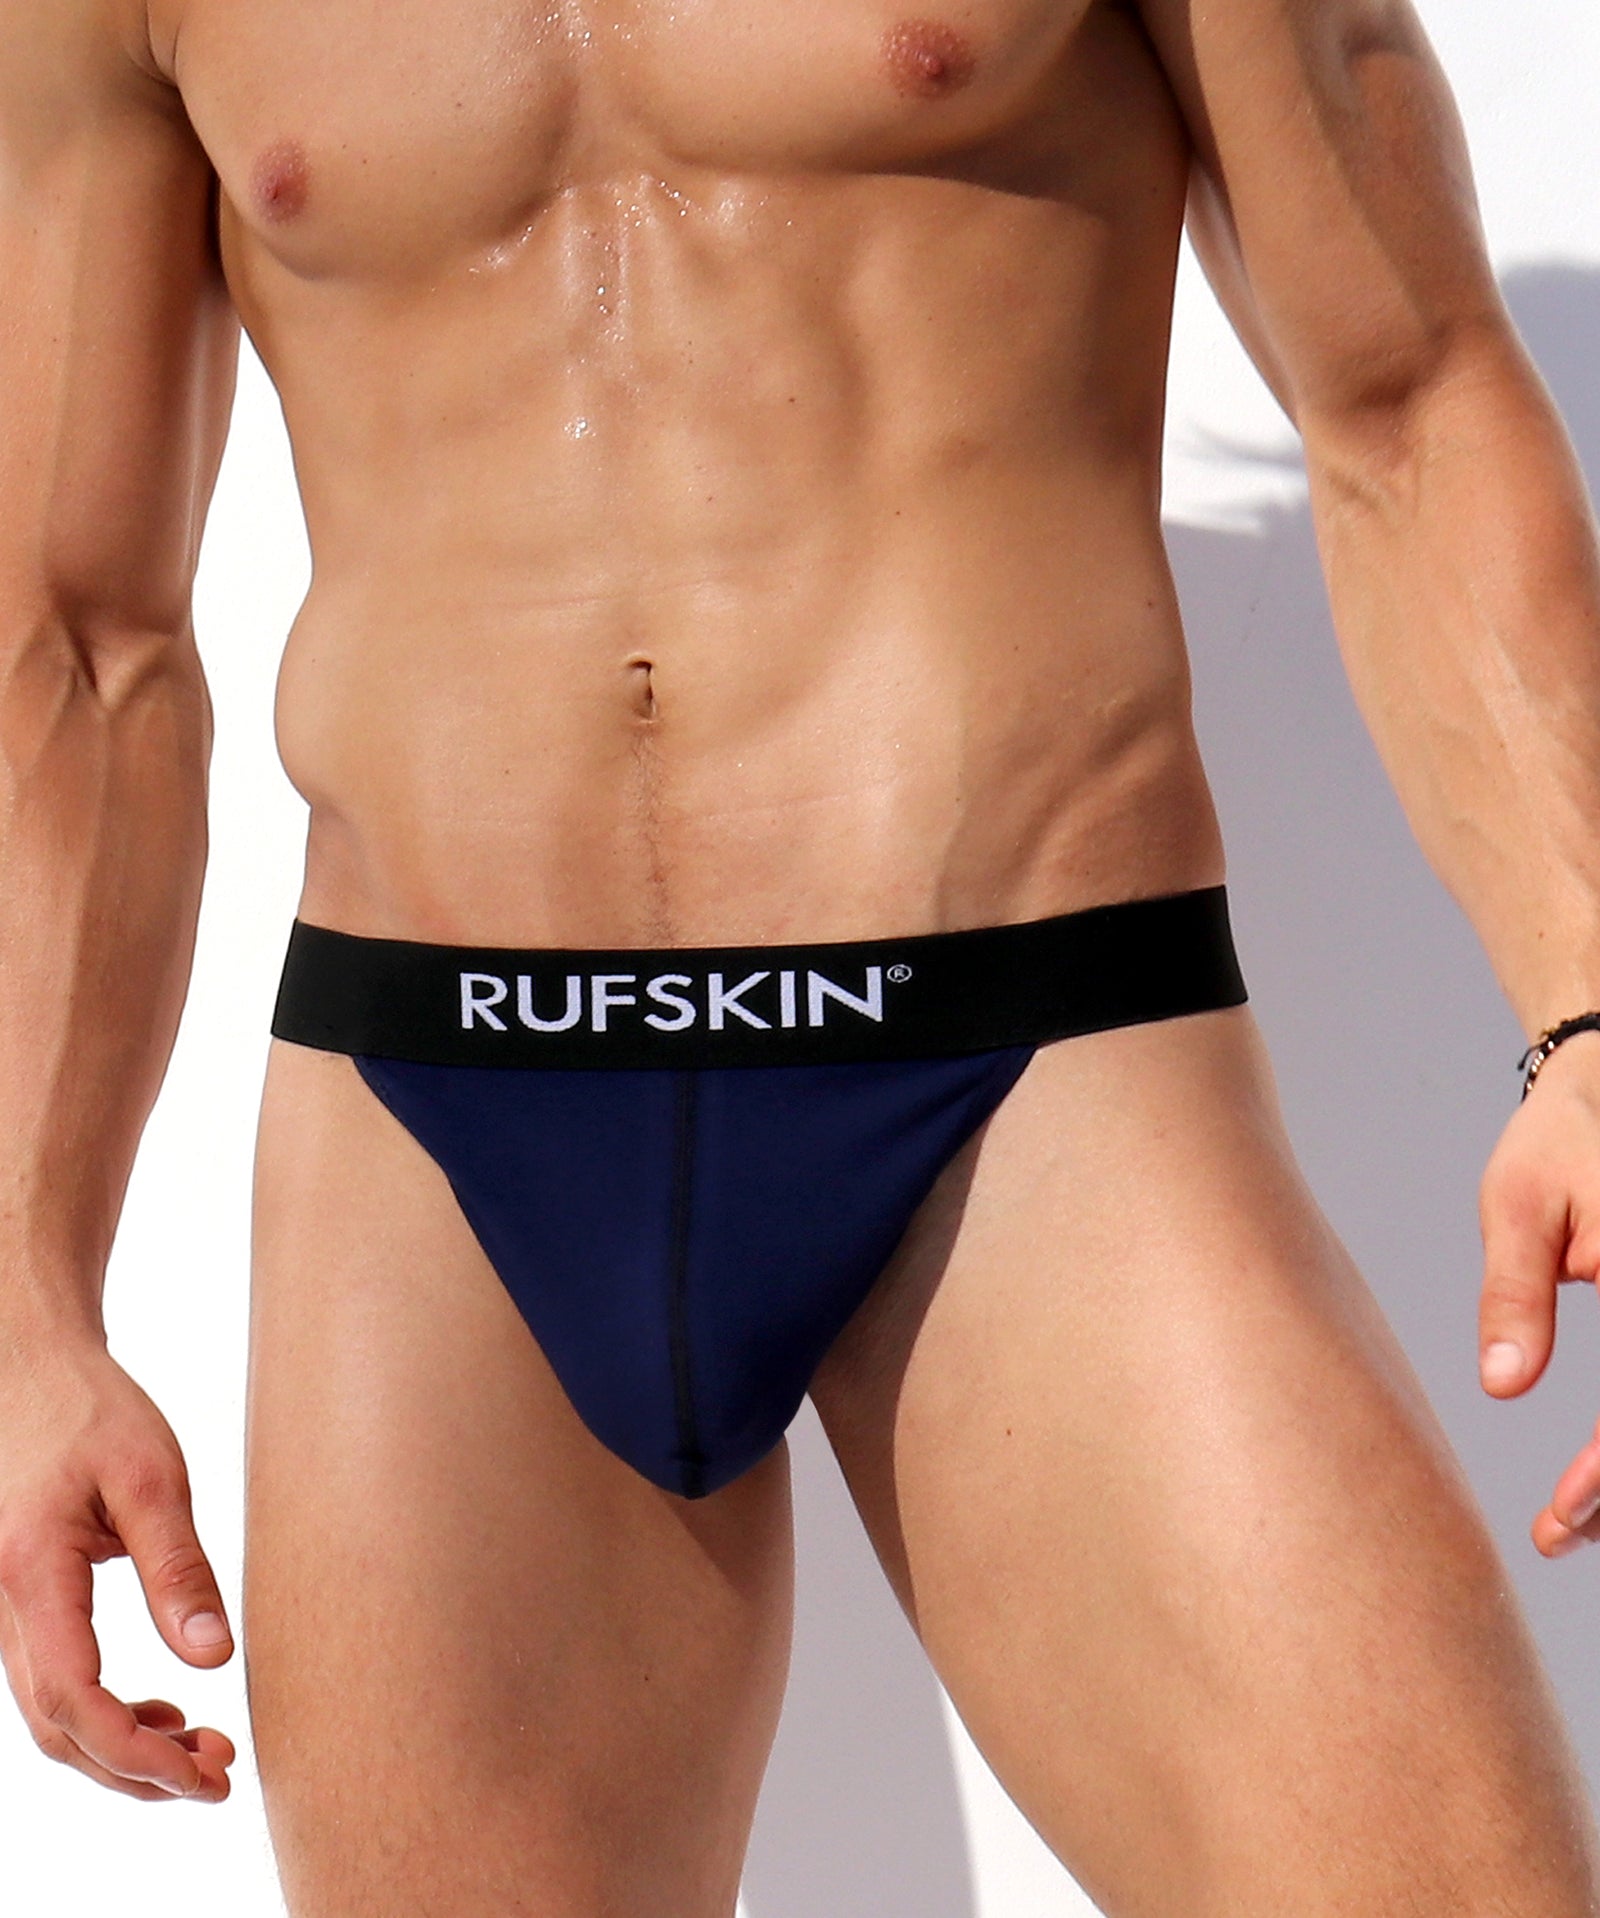 Rufskin® Underwear Shop Rufskin® Underwear Briefs Jockstraps Bikinis Boxers And Leisurewear